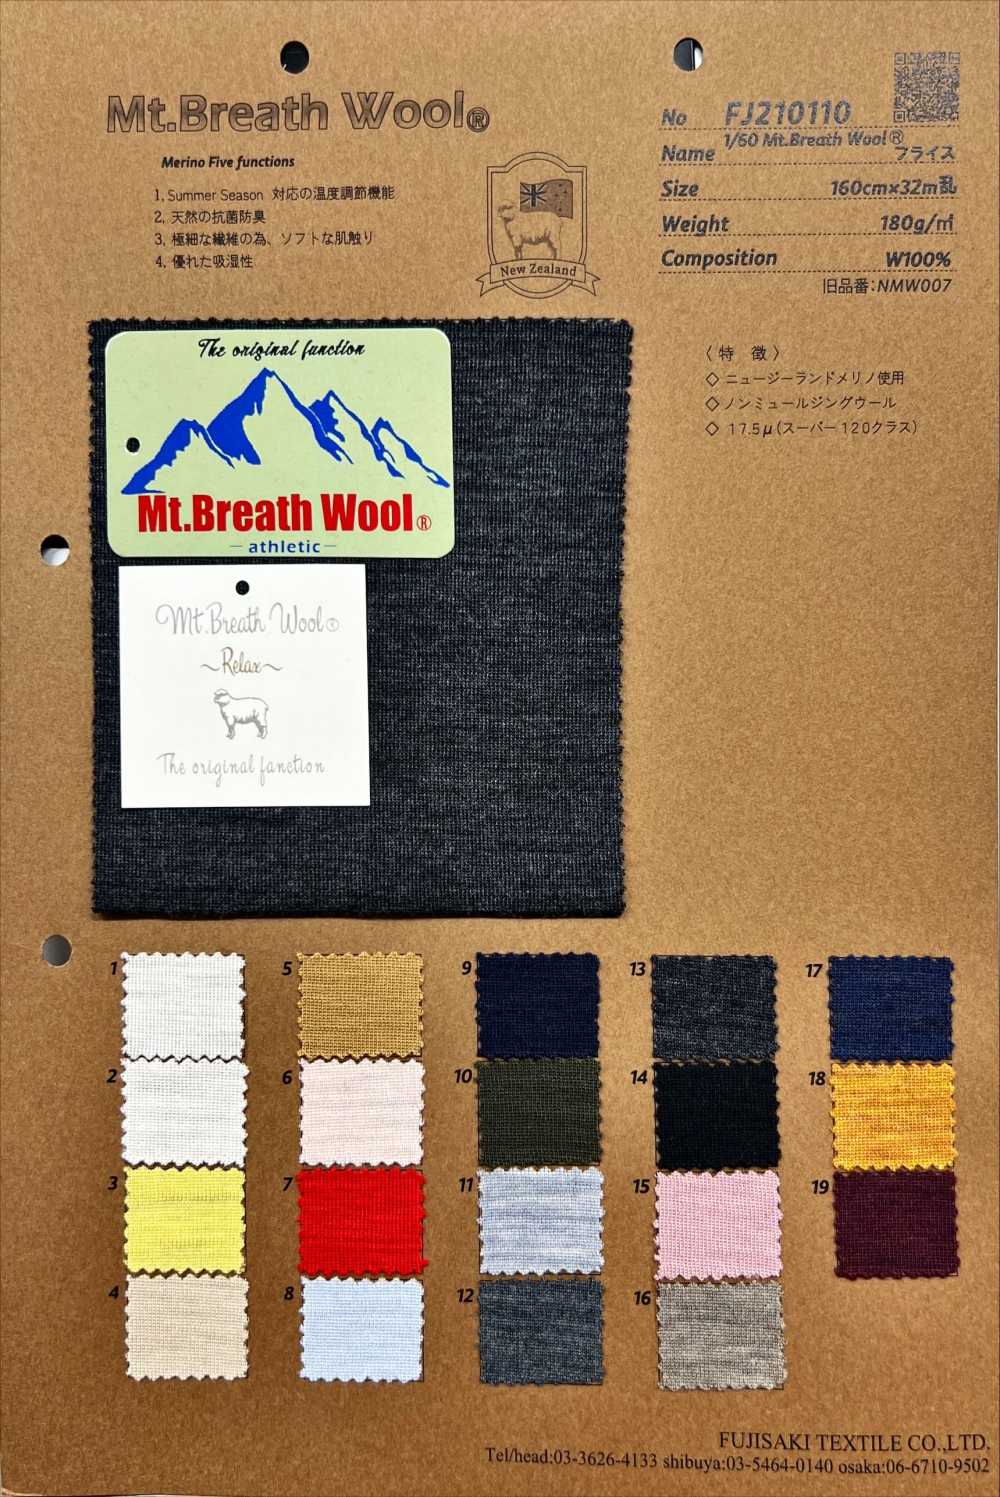 FJ210110 1/60 Mt.Breath Wool 후라이스[원단] Fujisaki Textile